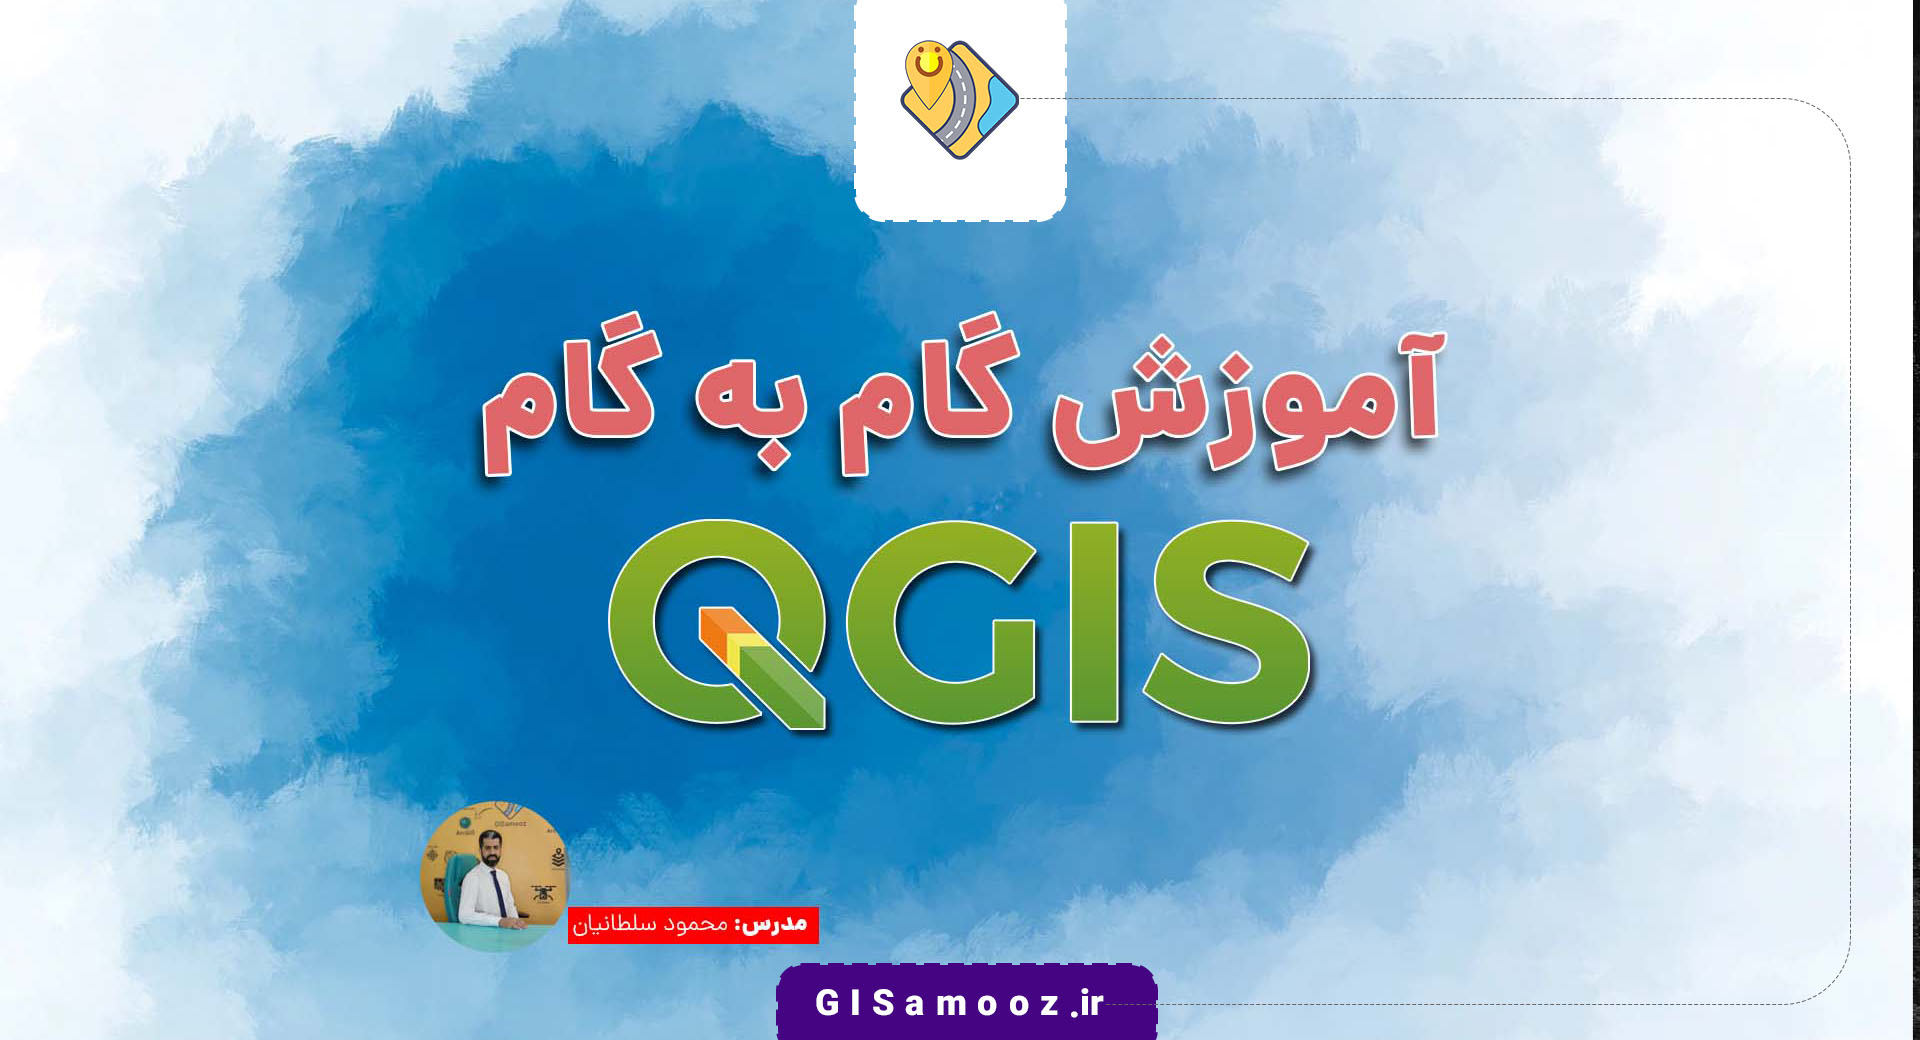 آموزش نرم افزار QGIS به صورت گام به گام